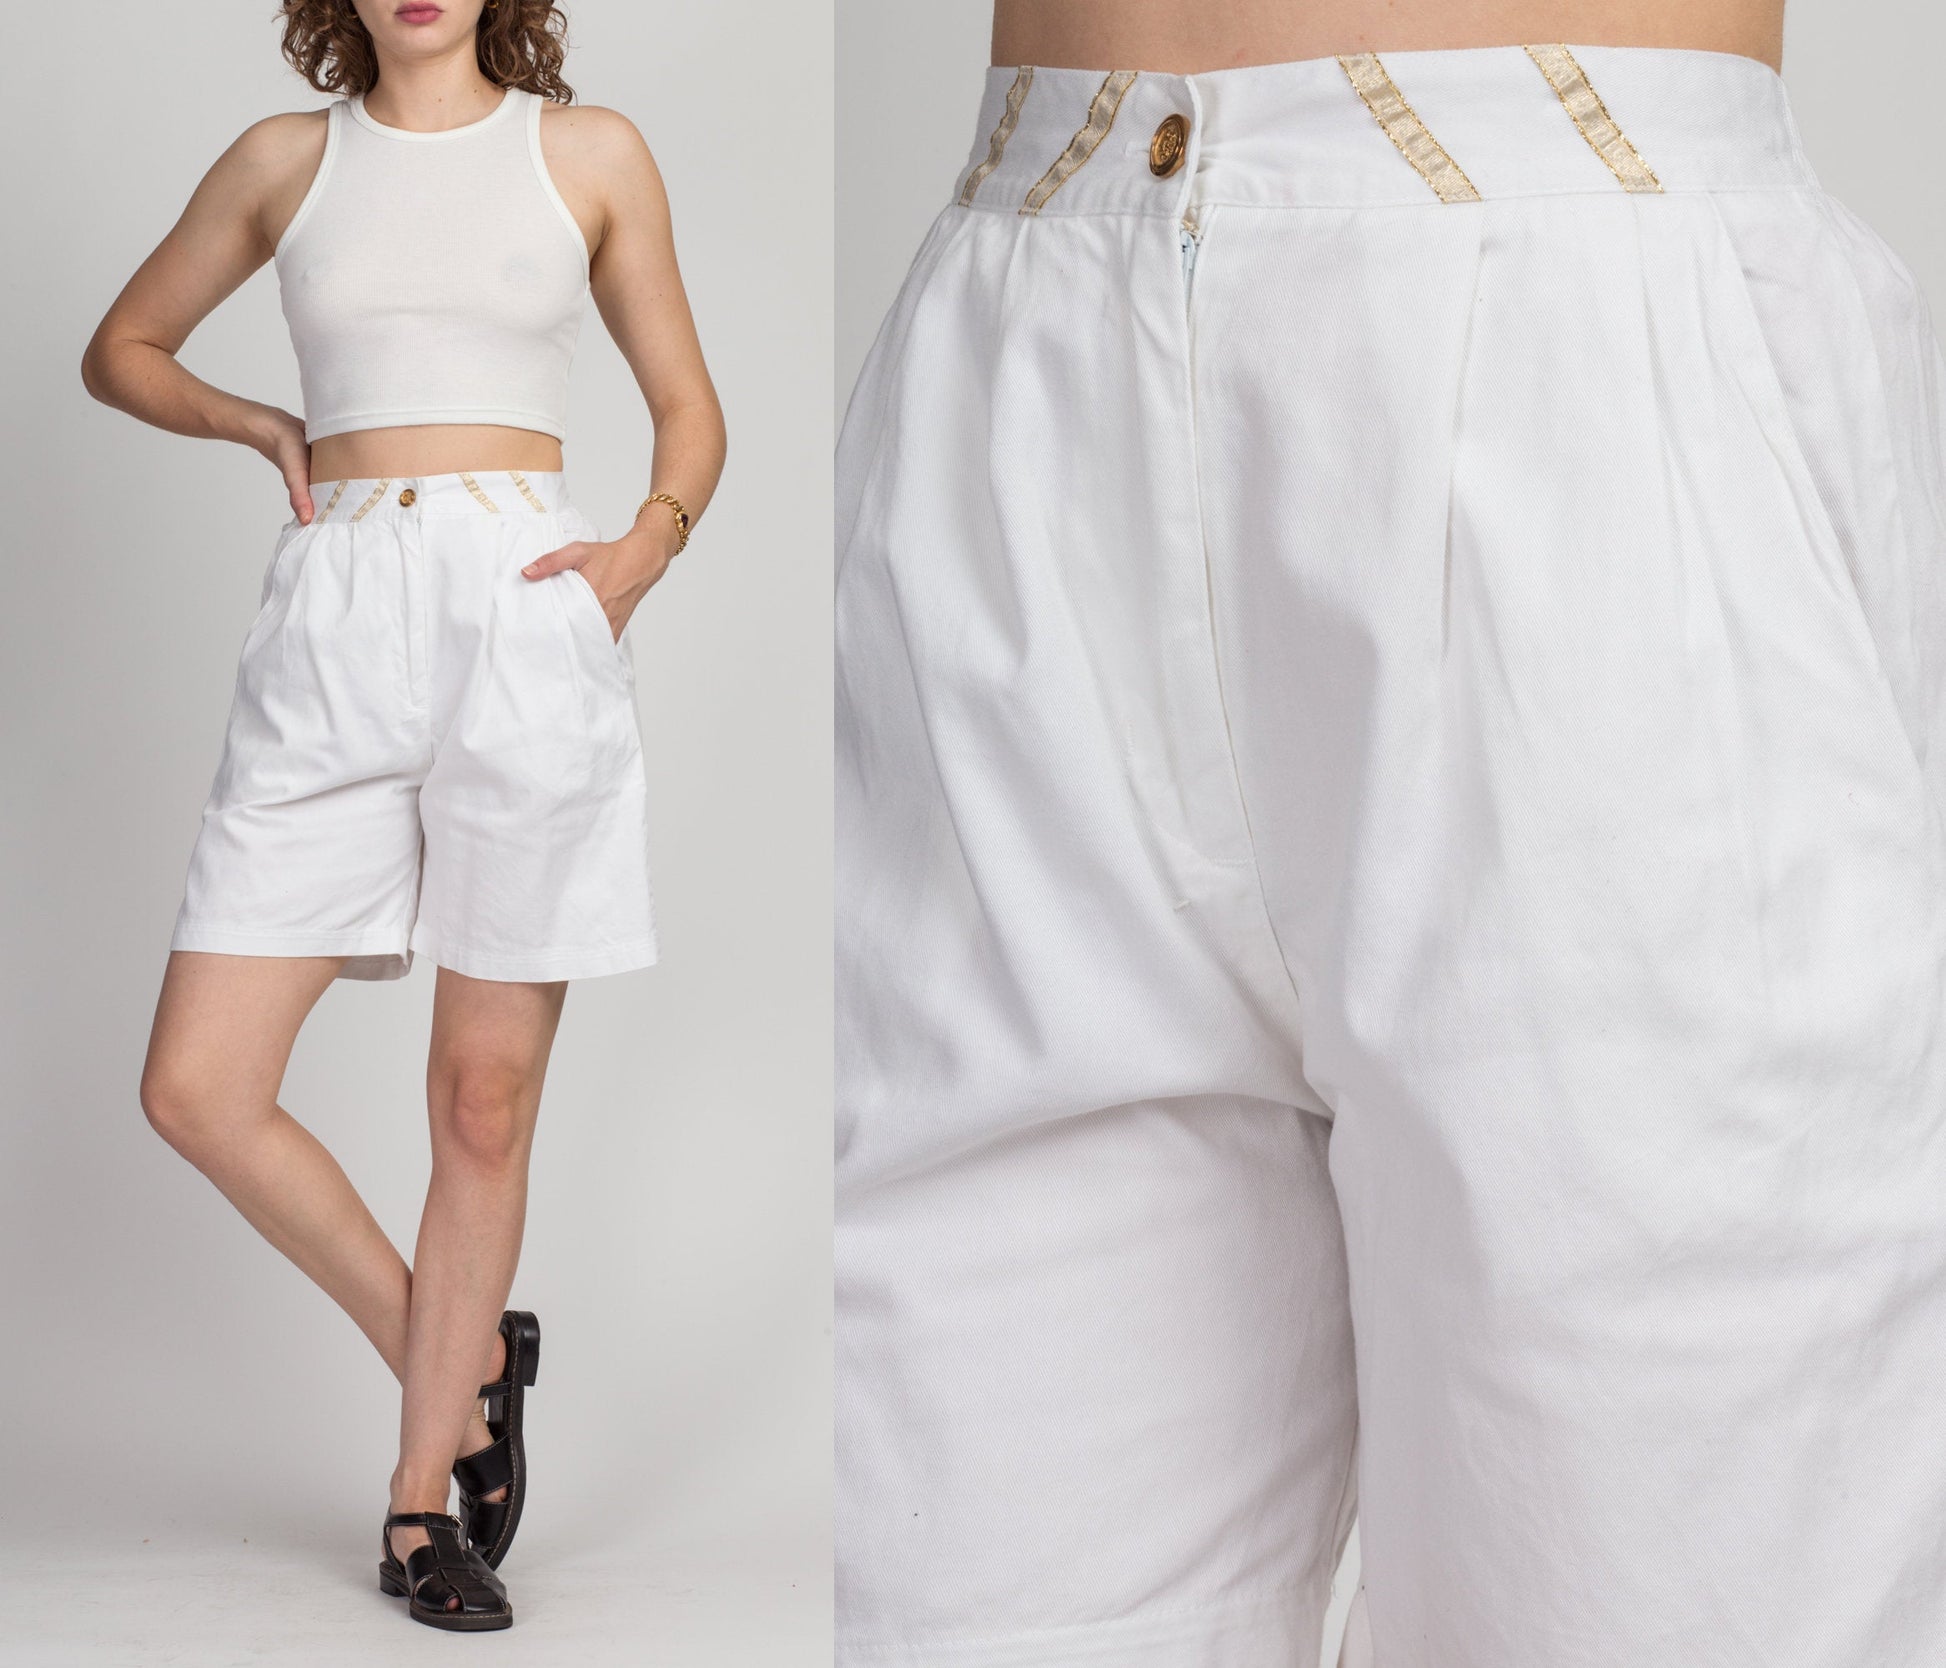 90s High Waist White Shorts - Medium 